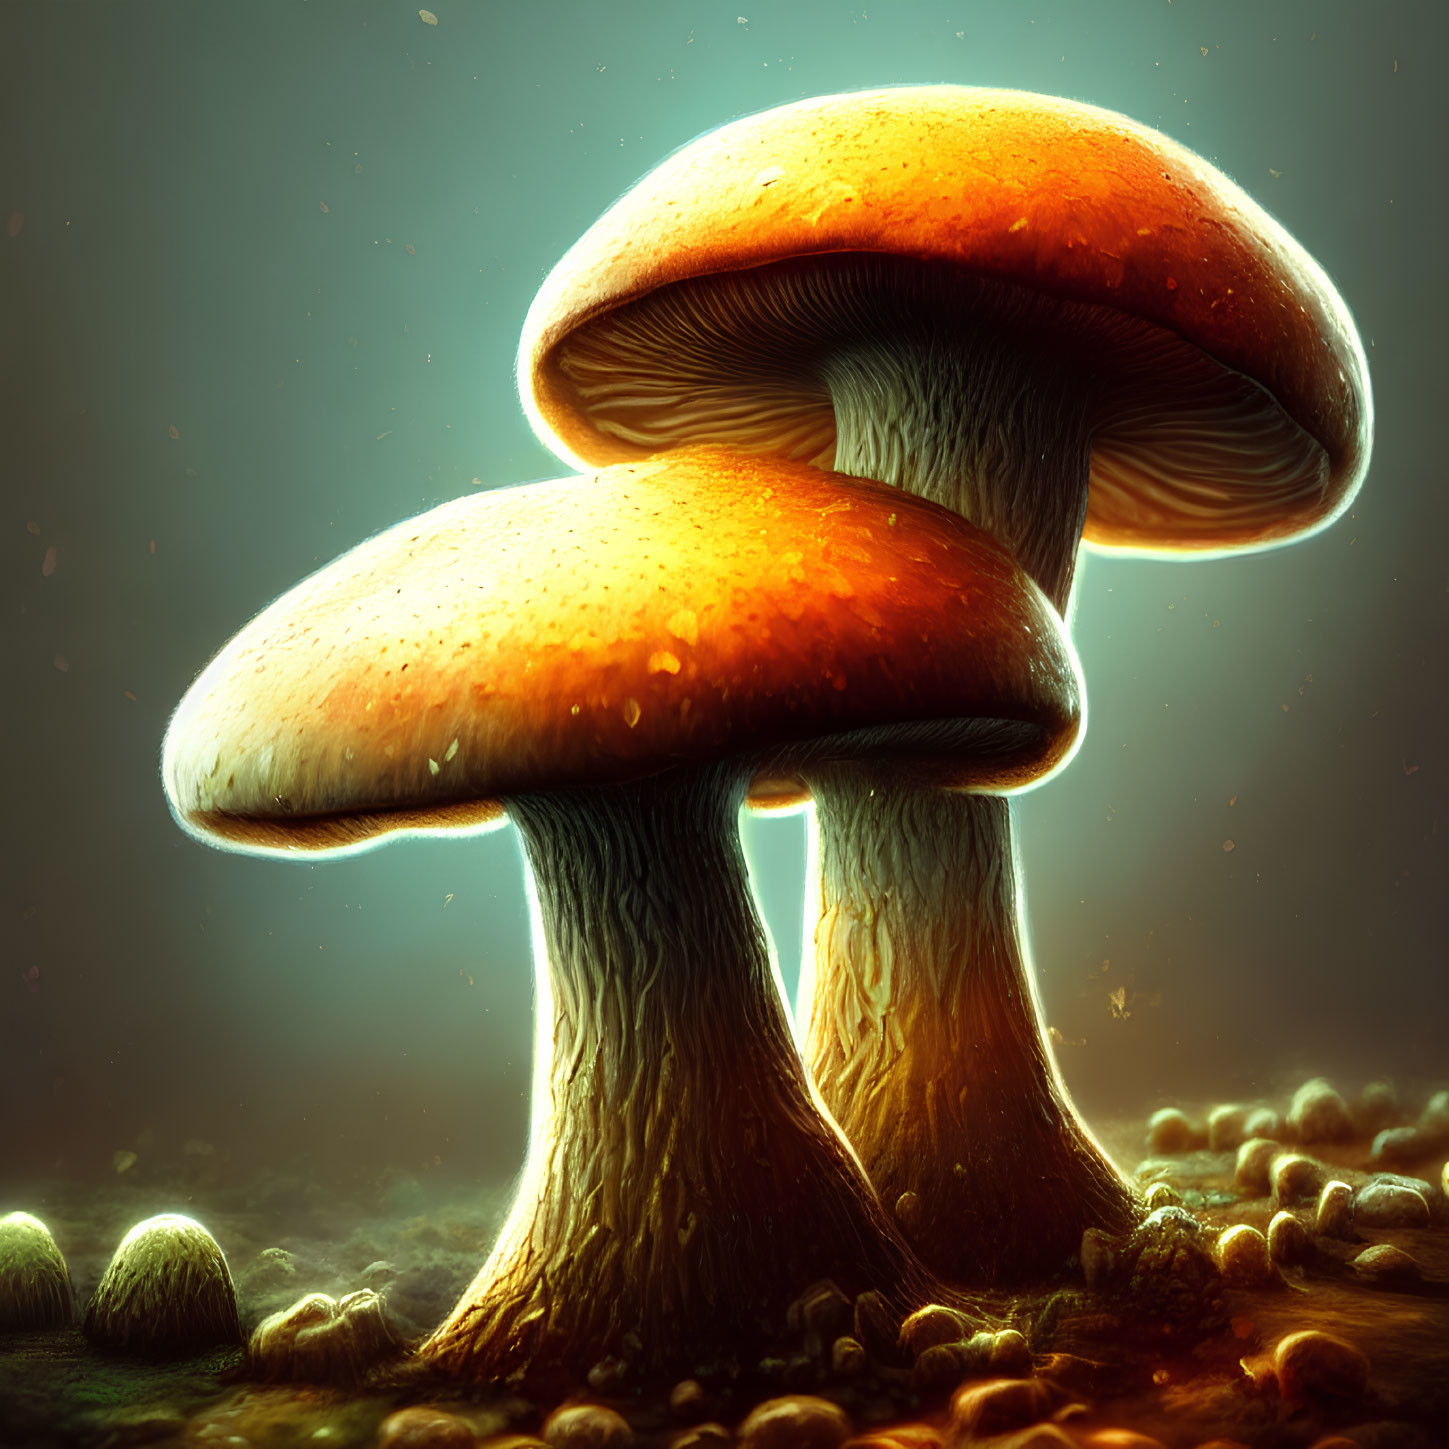 Luminous orange-capped mushrooms in mystical foggy landscape